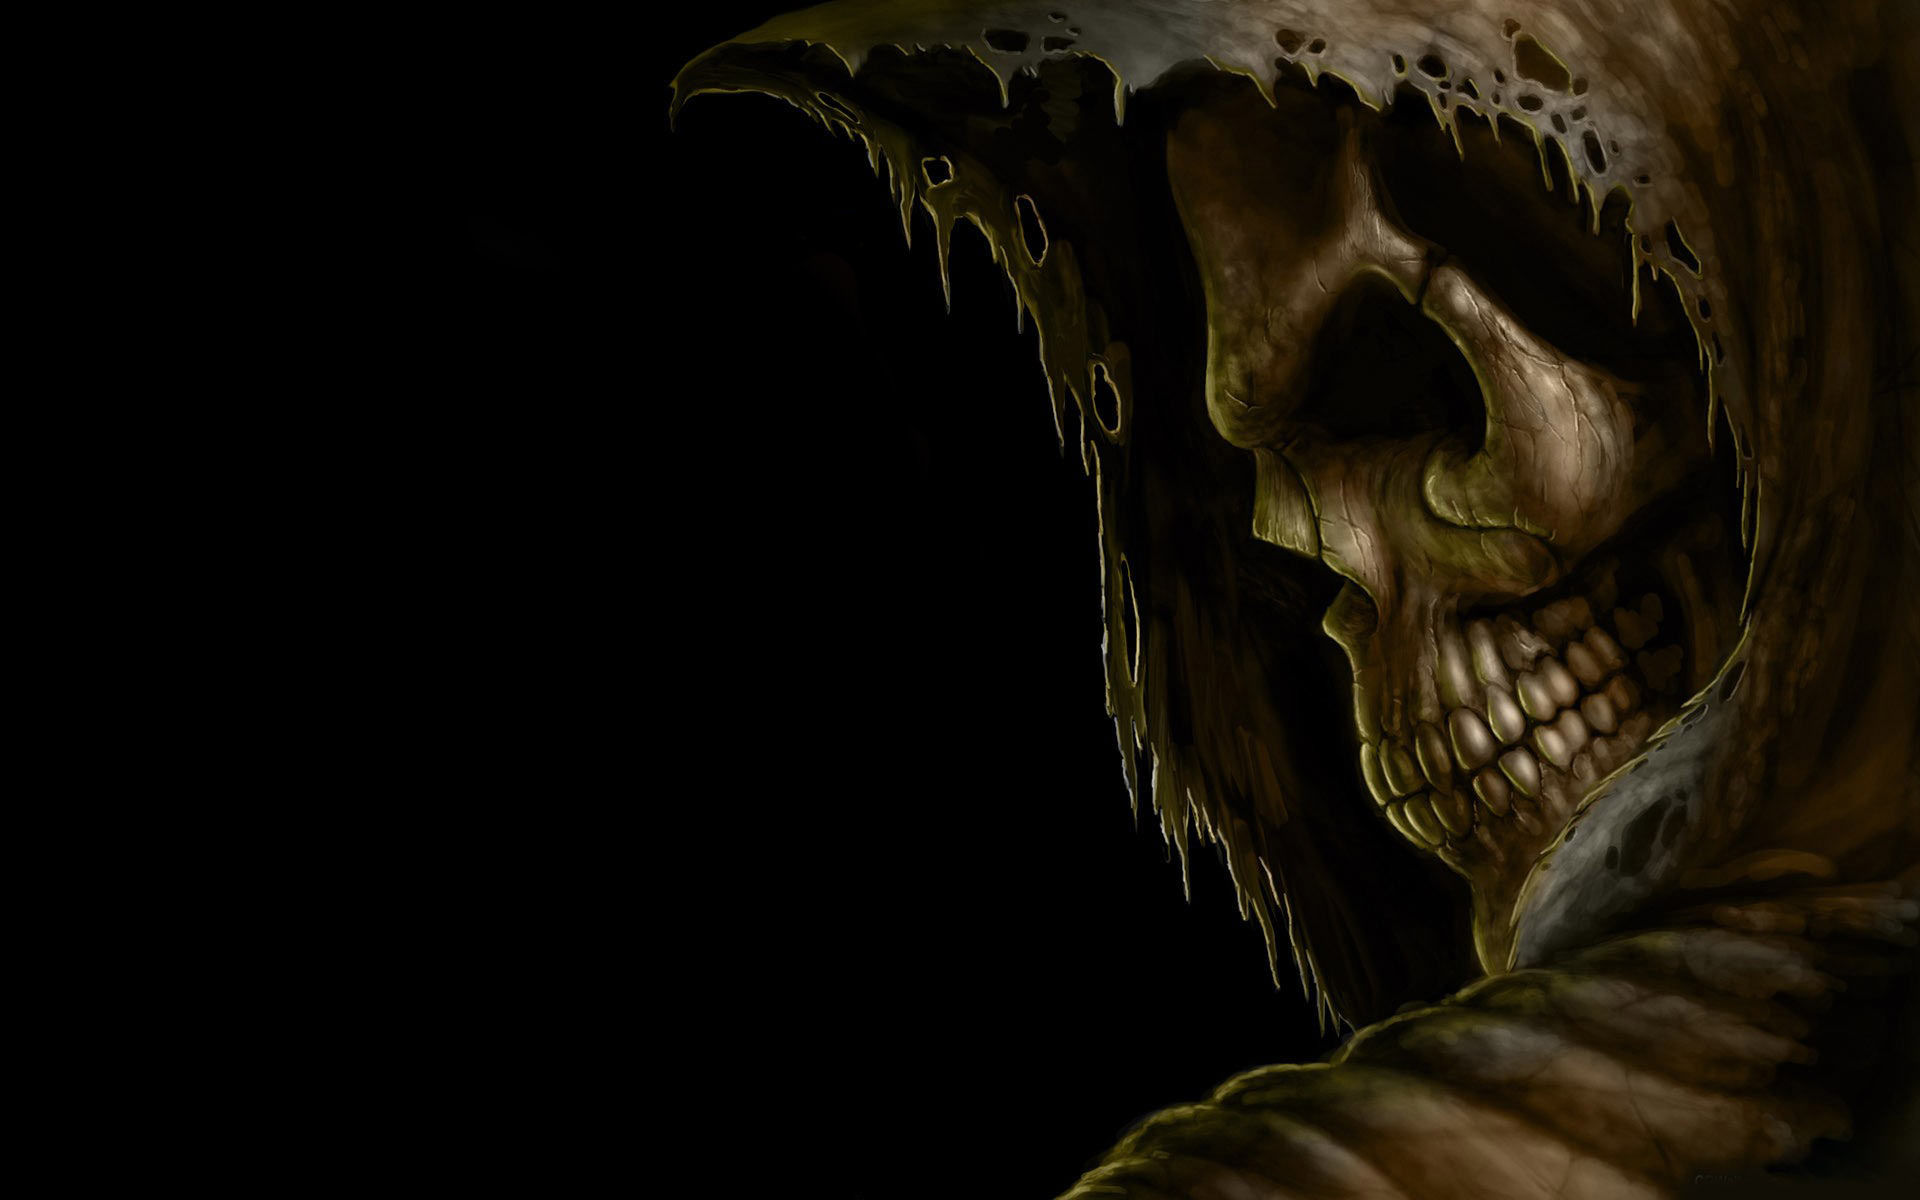 Menacing Grim Reaper against a dark backdrop - perfect for Halloween desktop wallpaper.